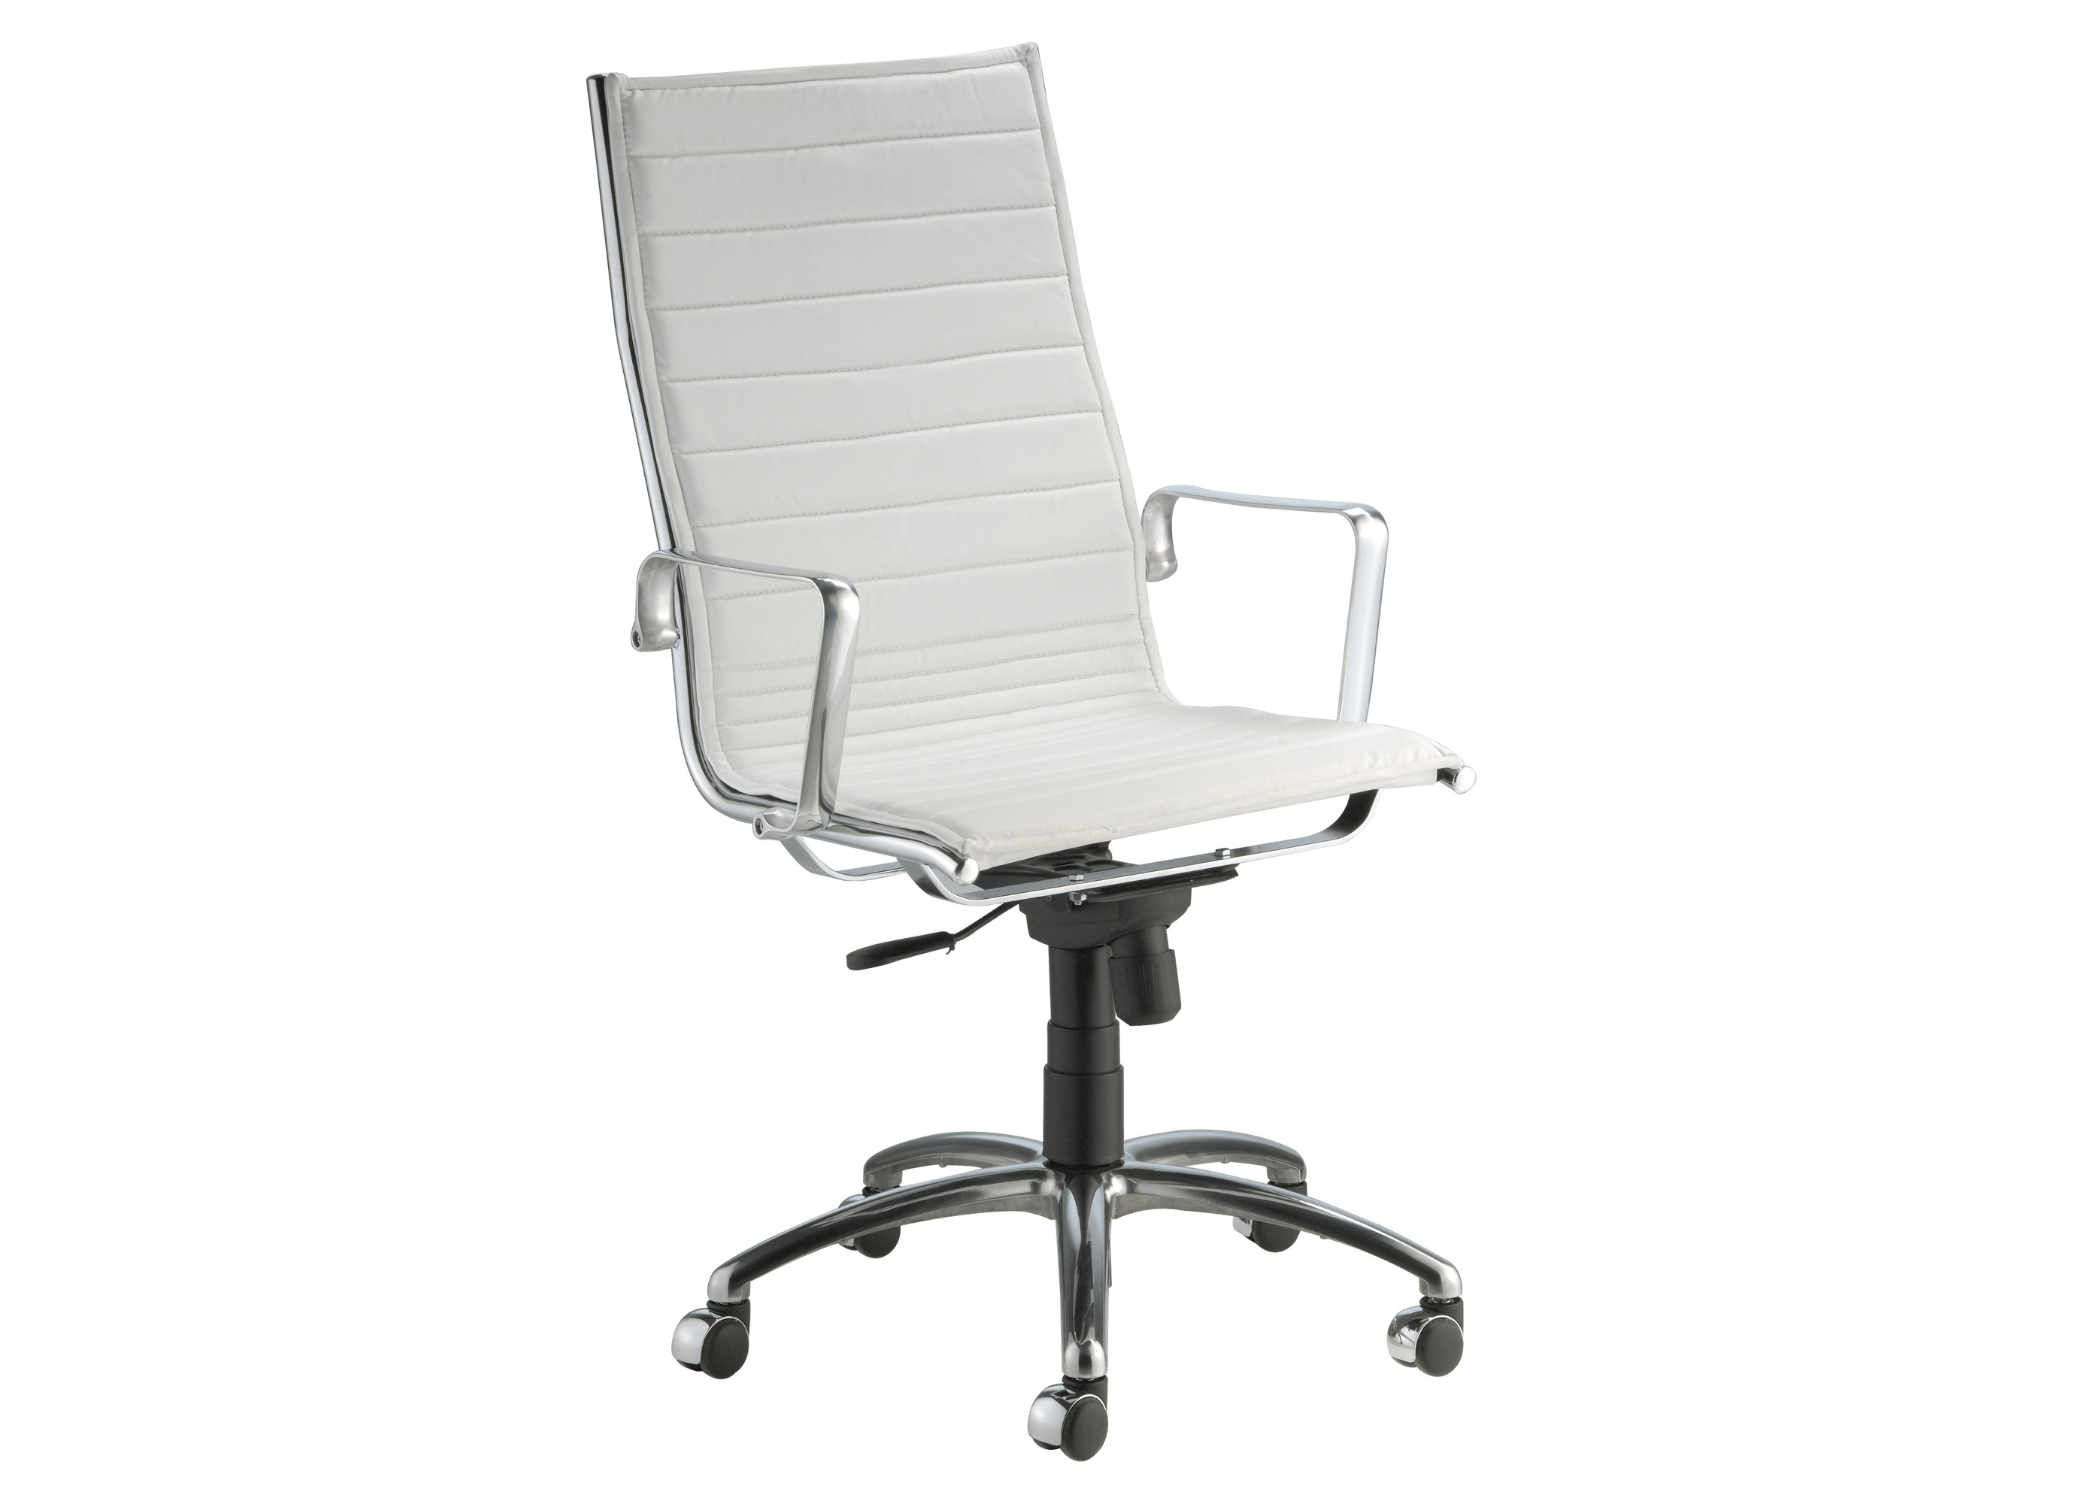 Estilo e ergonomia: Cadeira Honey I com design contemporâneo e regulagem de altura.